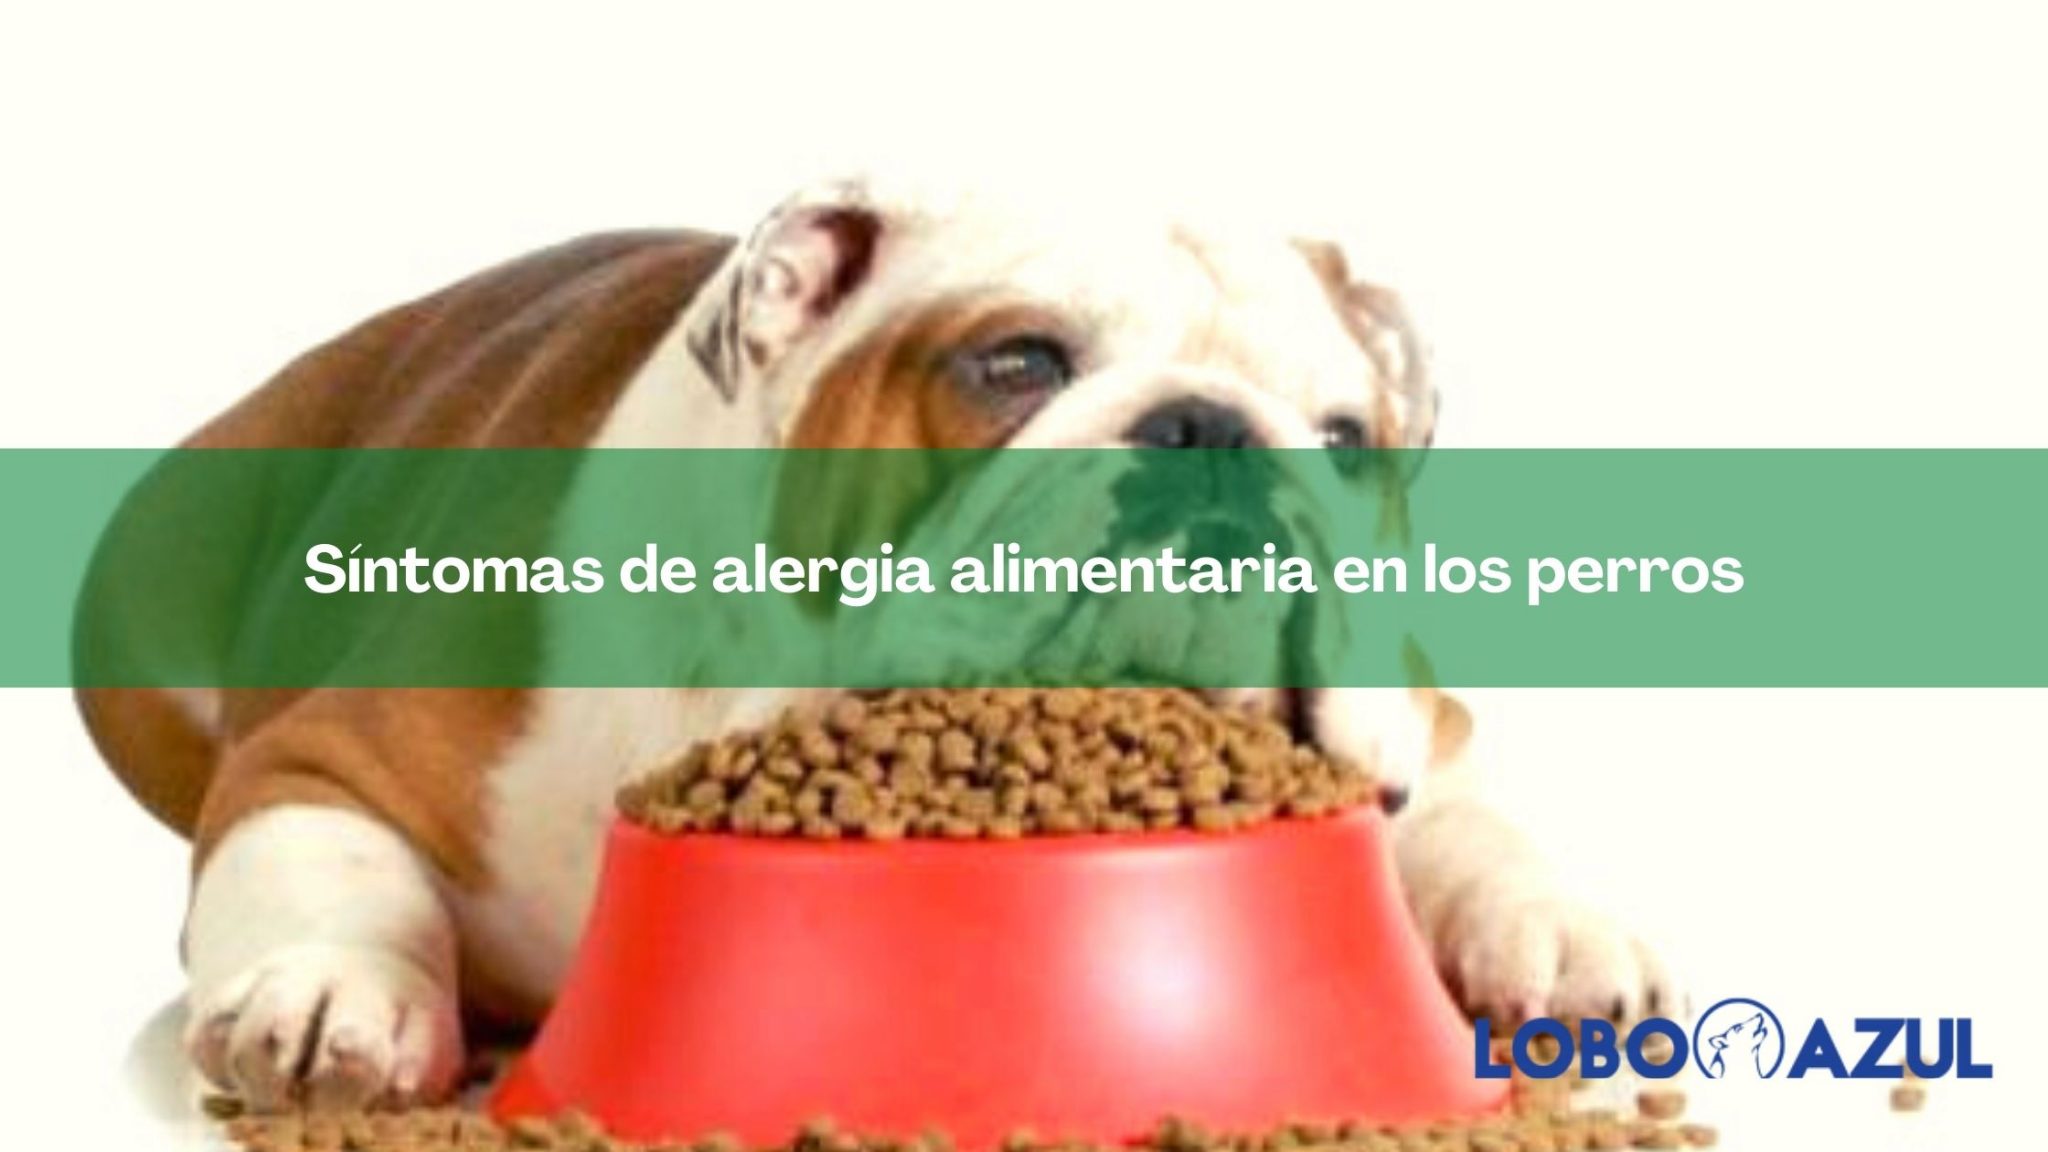 Síntomas de alergia alimentaria en los perros, cuidados y prevención 【Lobo  Azul】